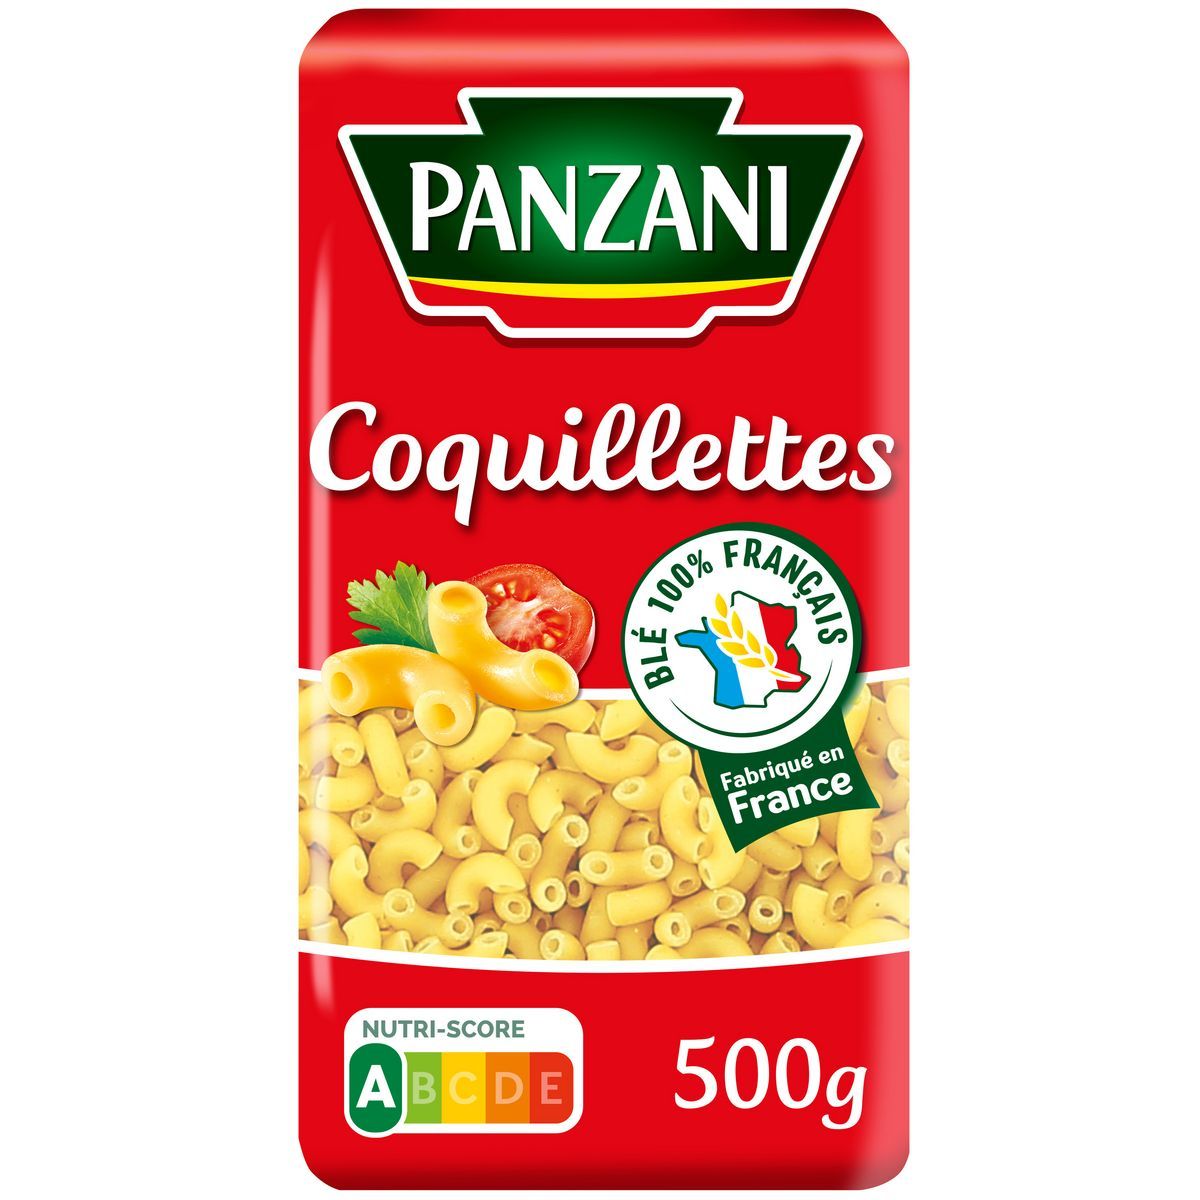 COQUILLETTES PANZANI